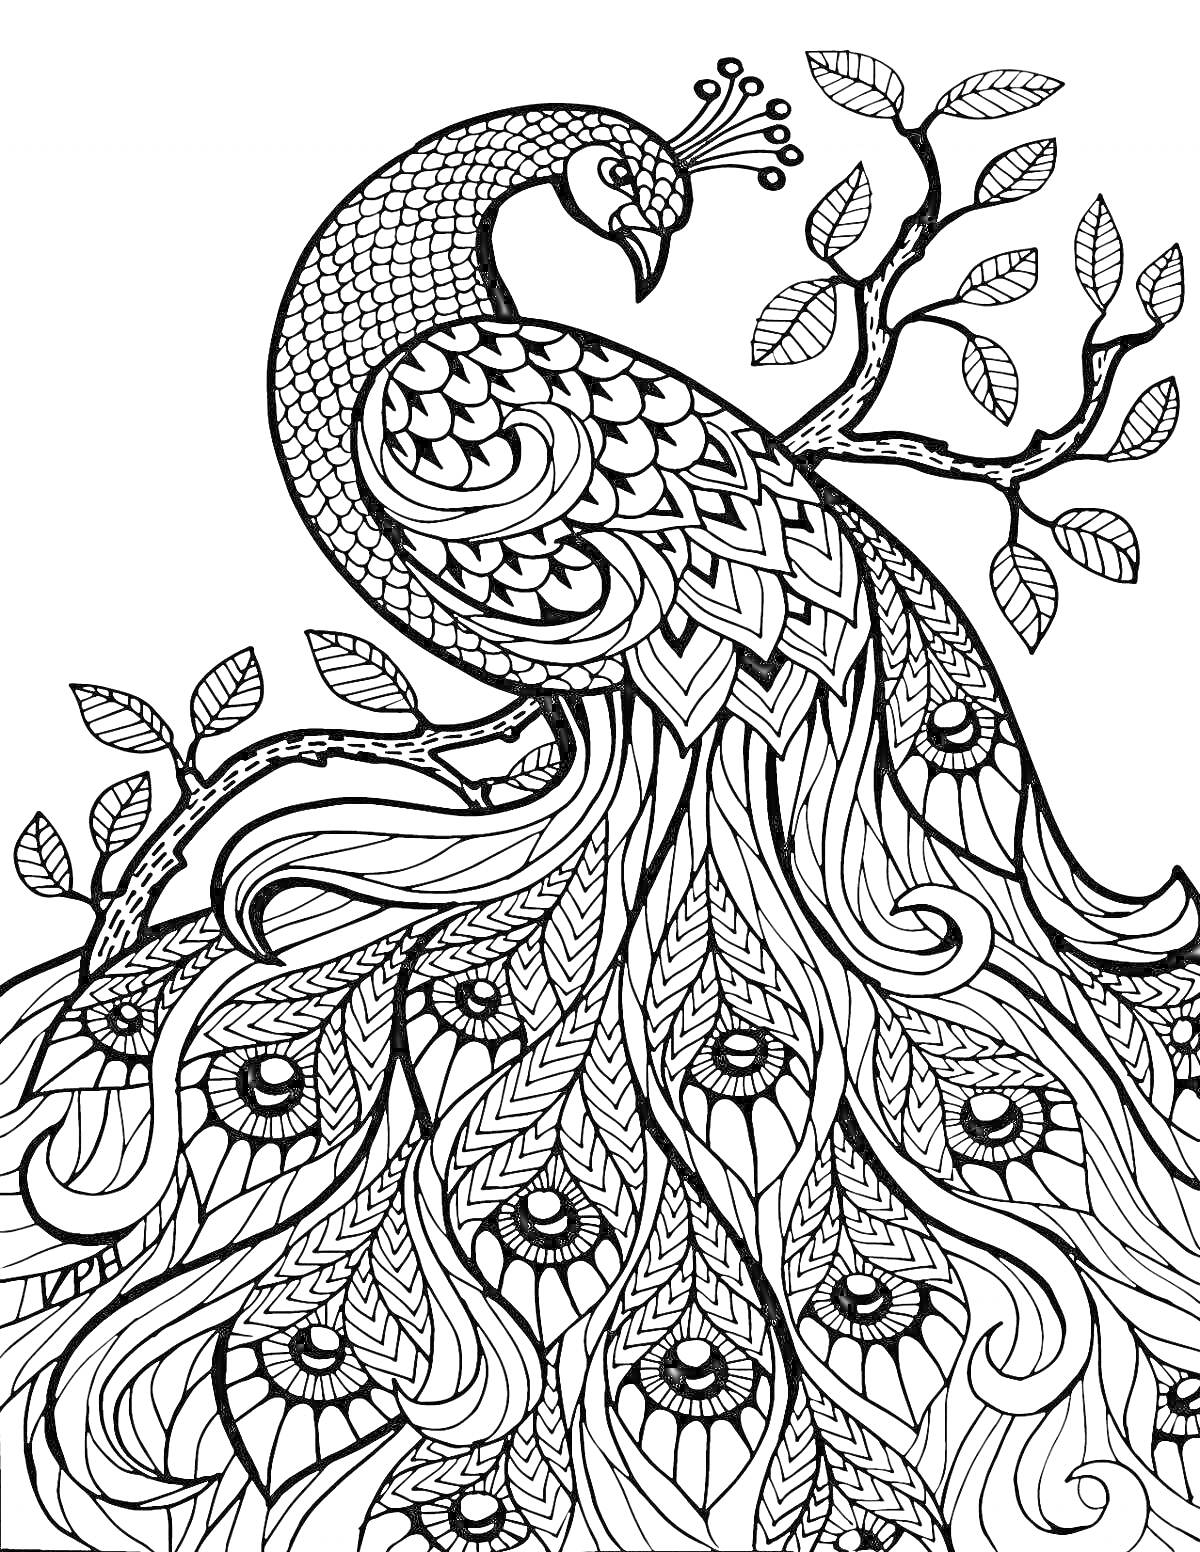 Павлина дерево с изящными листьями и деталями хвоста